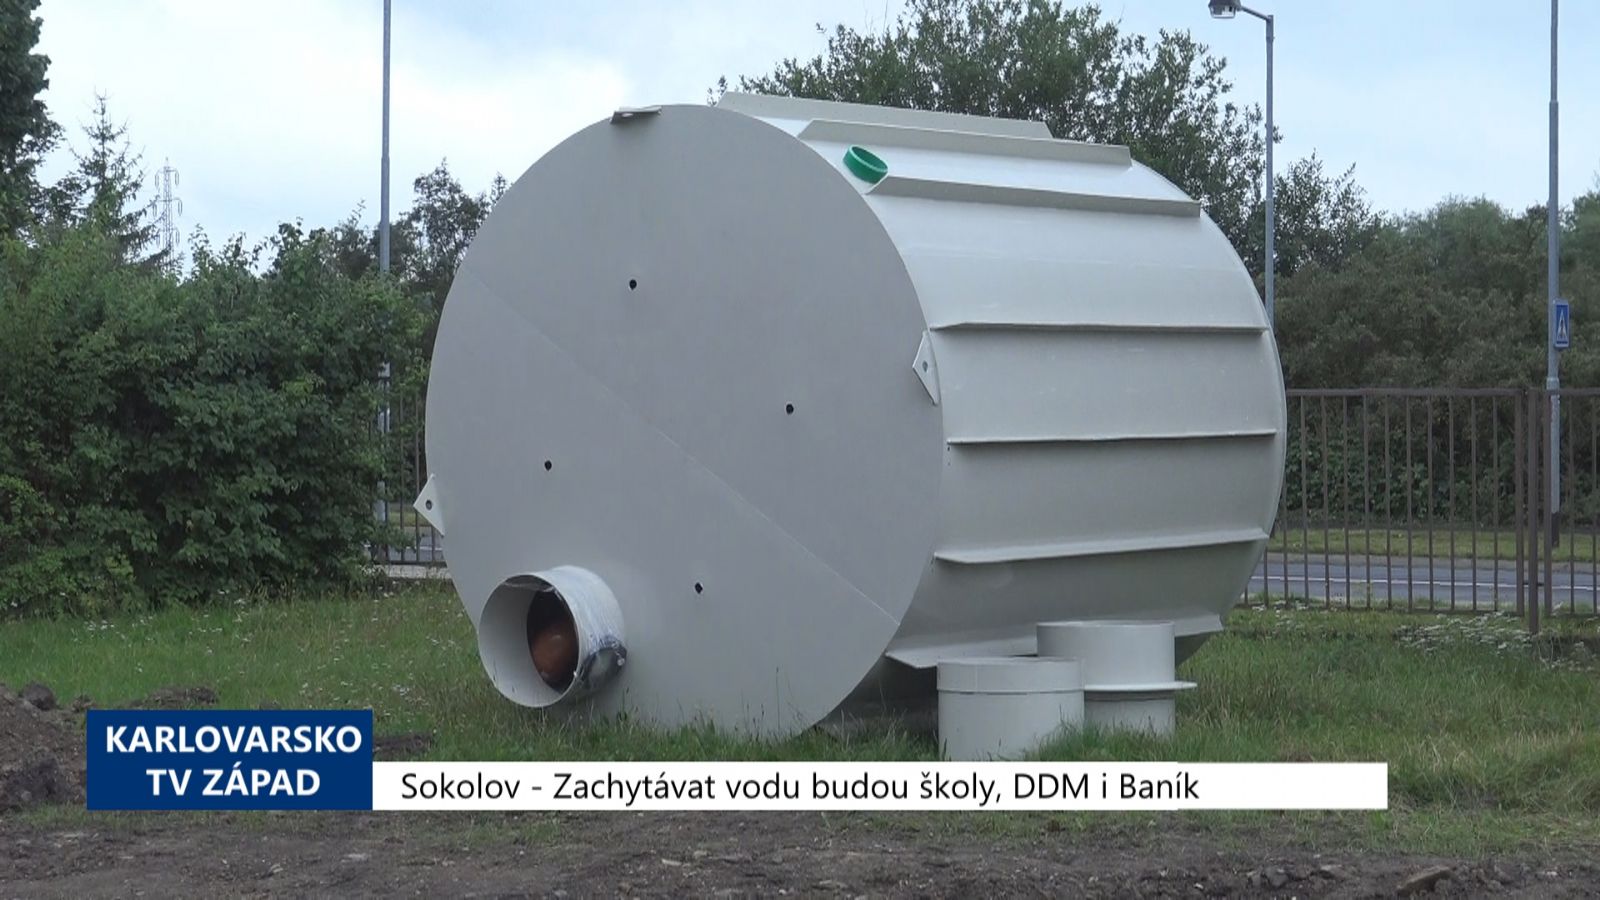 Sokolov: Zachytávat vodu budou školy, DDM i Baník (TV Západ)